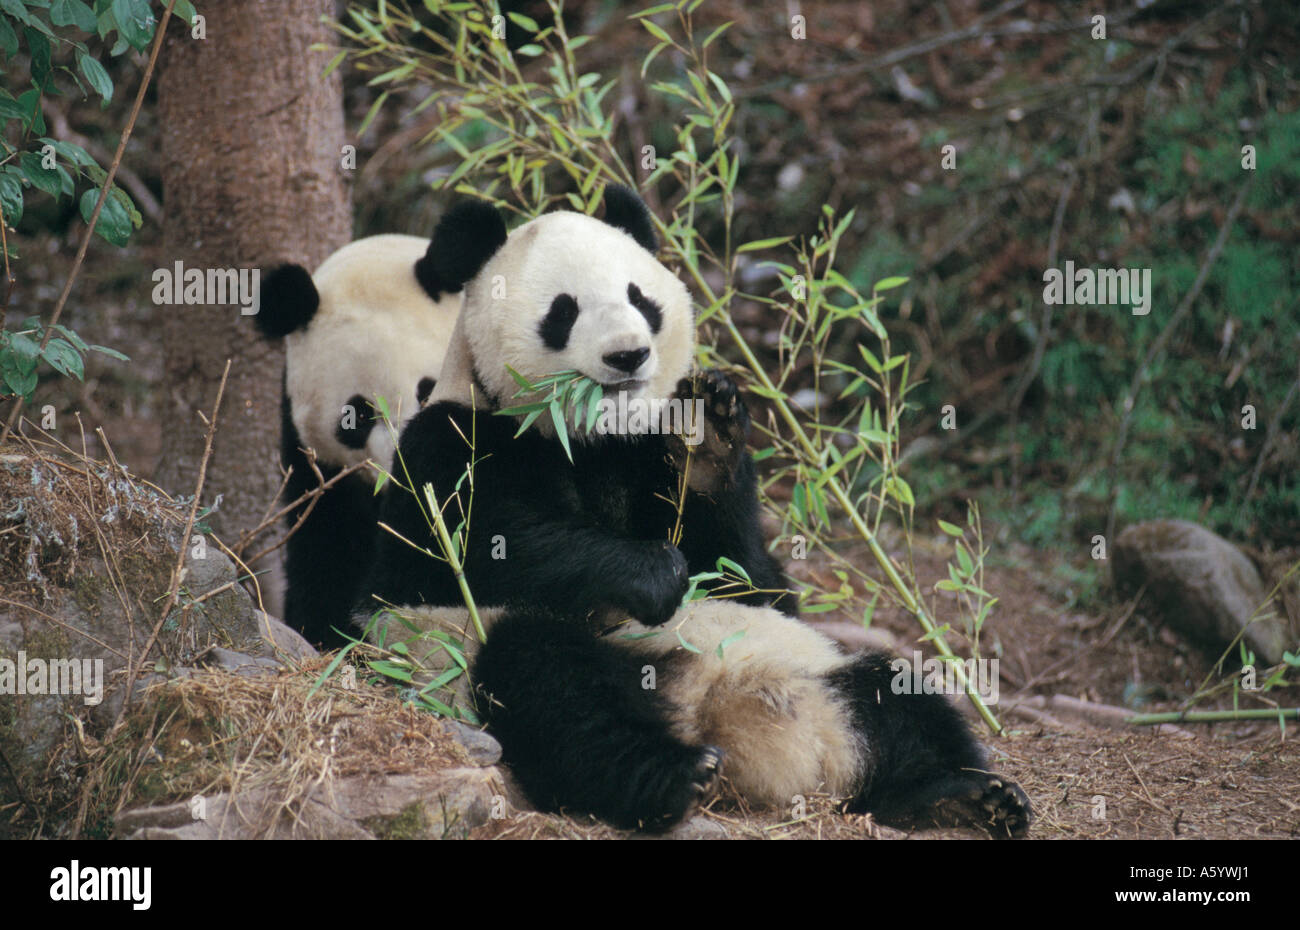 Deux grand panda (Ailuropoda melanoleuca) reposant dans la forêt, la réserve naturelle nationale de Wolong, dans la province du Sichuan, Chine Banque D'Images